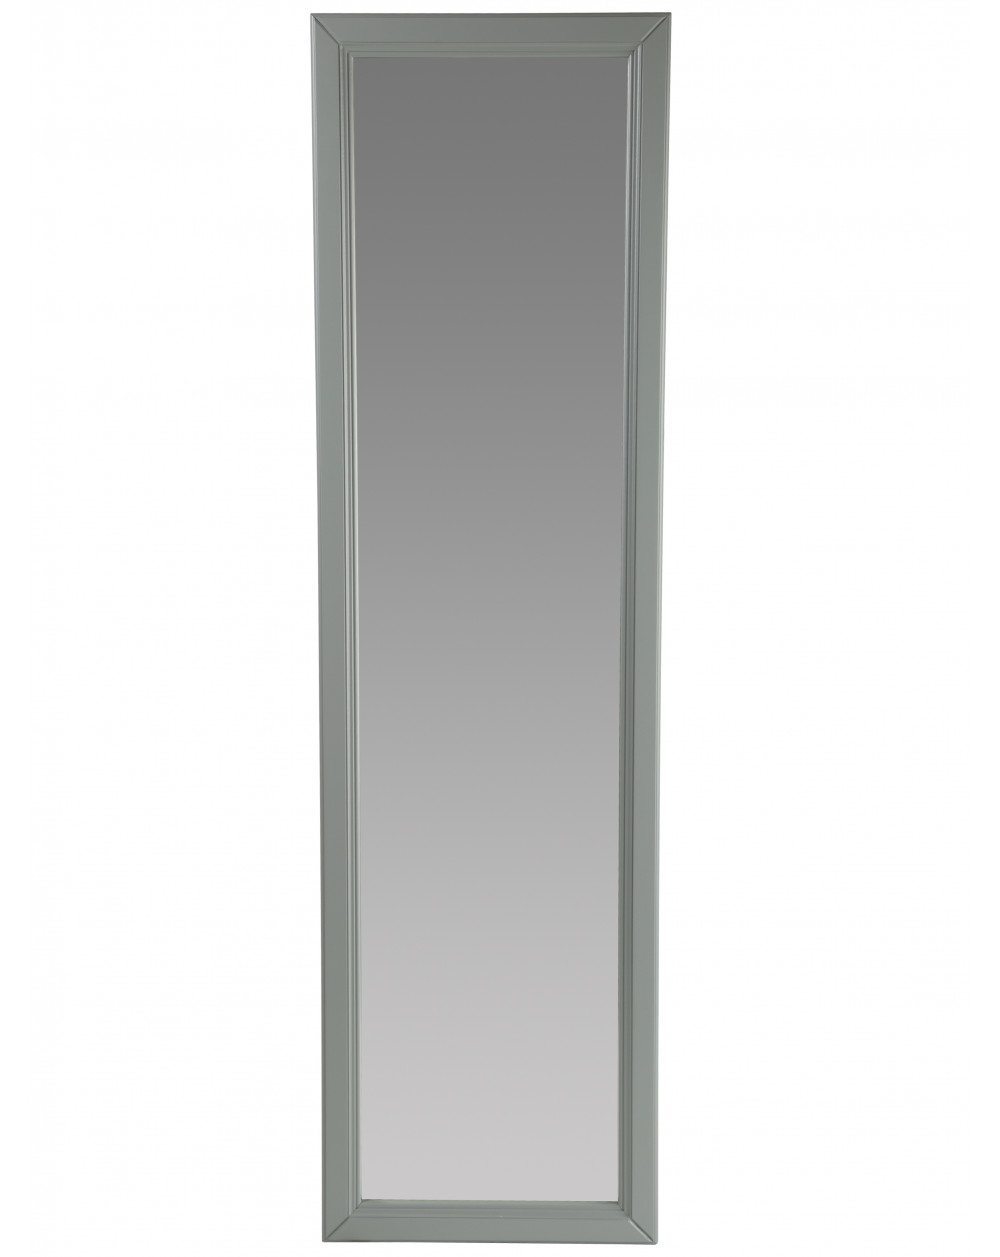 Зеркало настенное Селена 1 серый 119 см х 33,5 см фото Stolmag